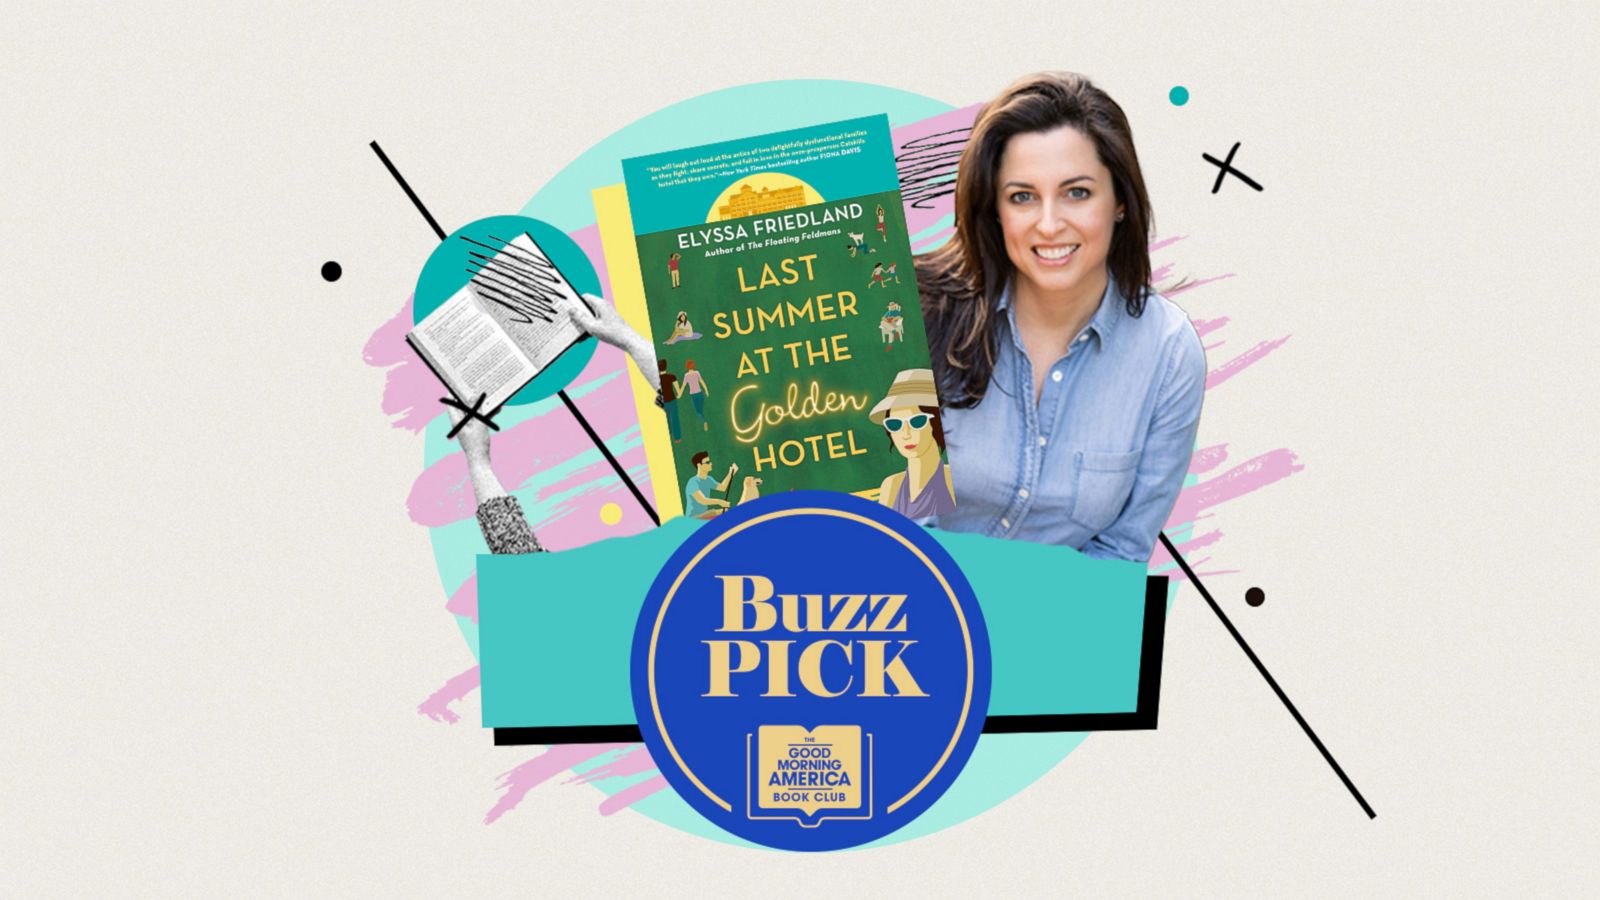 GMA' Buzz Picks: 'Last Summer at the Golden Hotel' by Elyssa